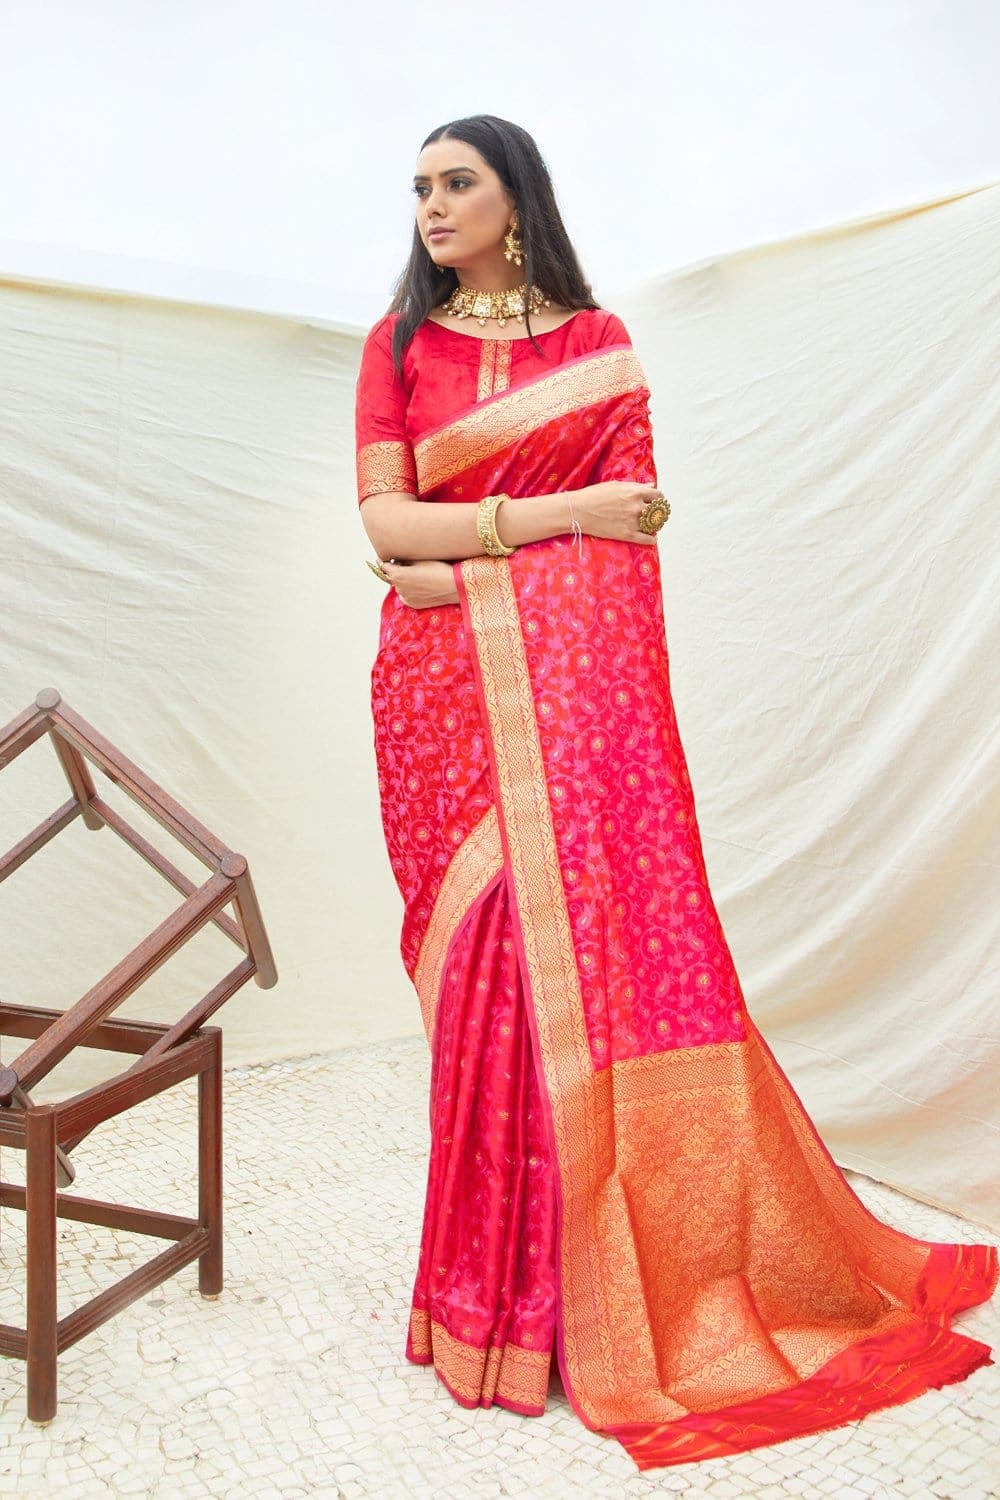 Banarasi Saree Red And Pink Zari Woven Banarasi Saree saree online